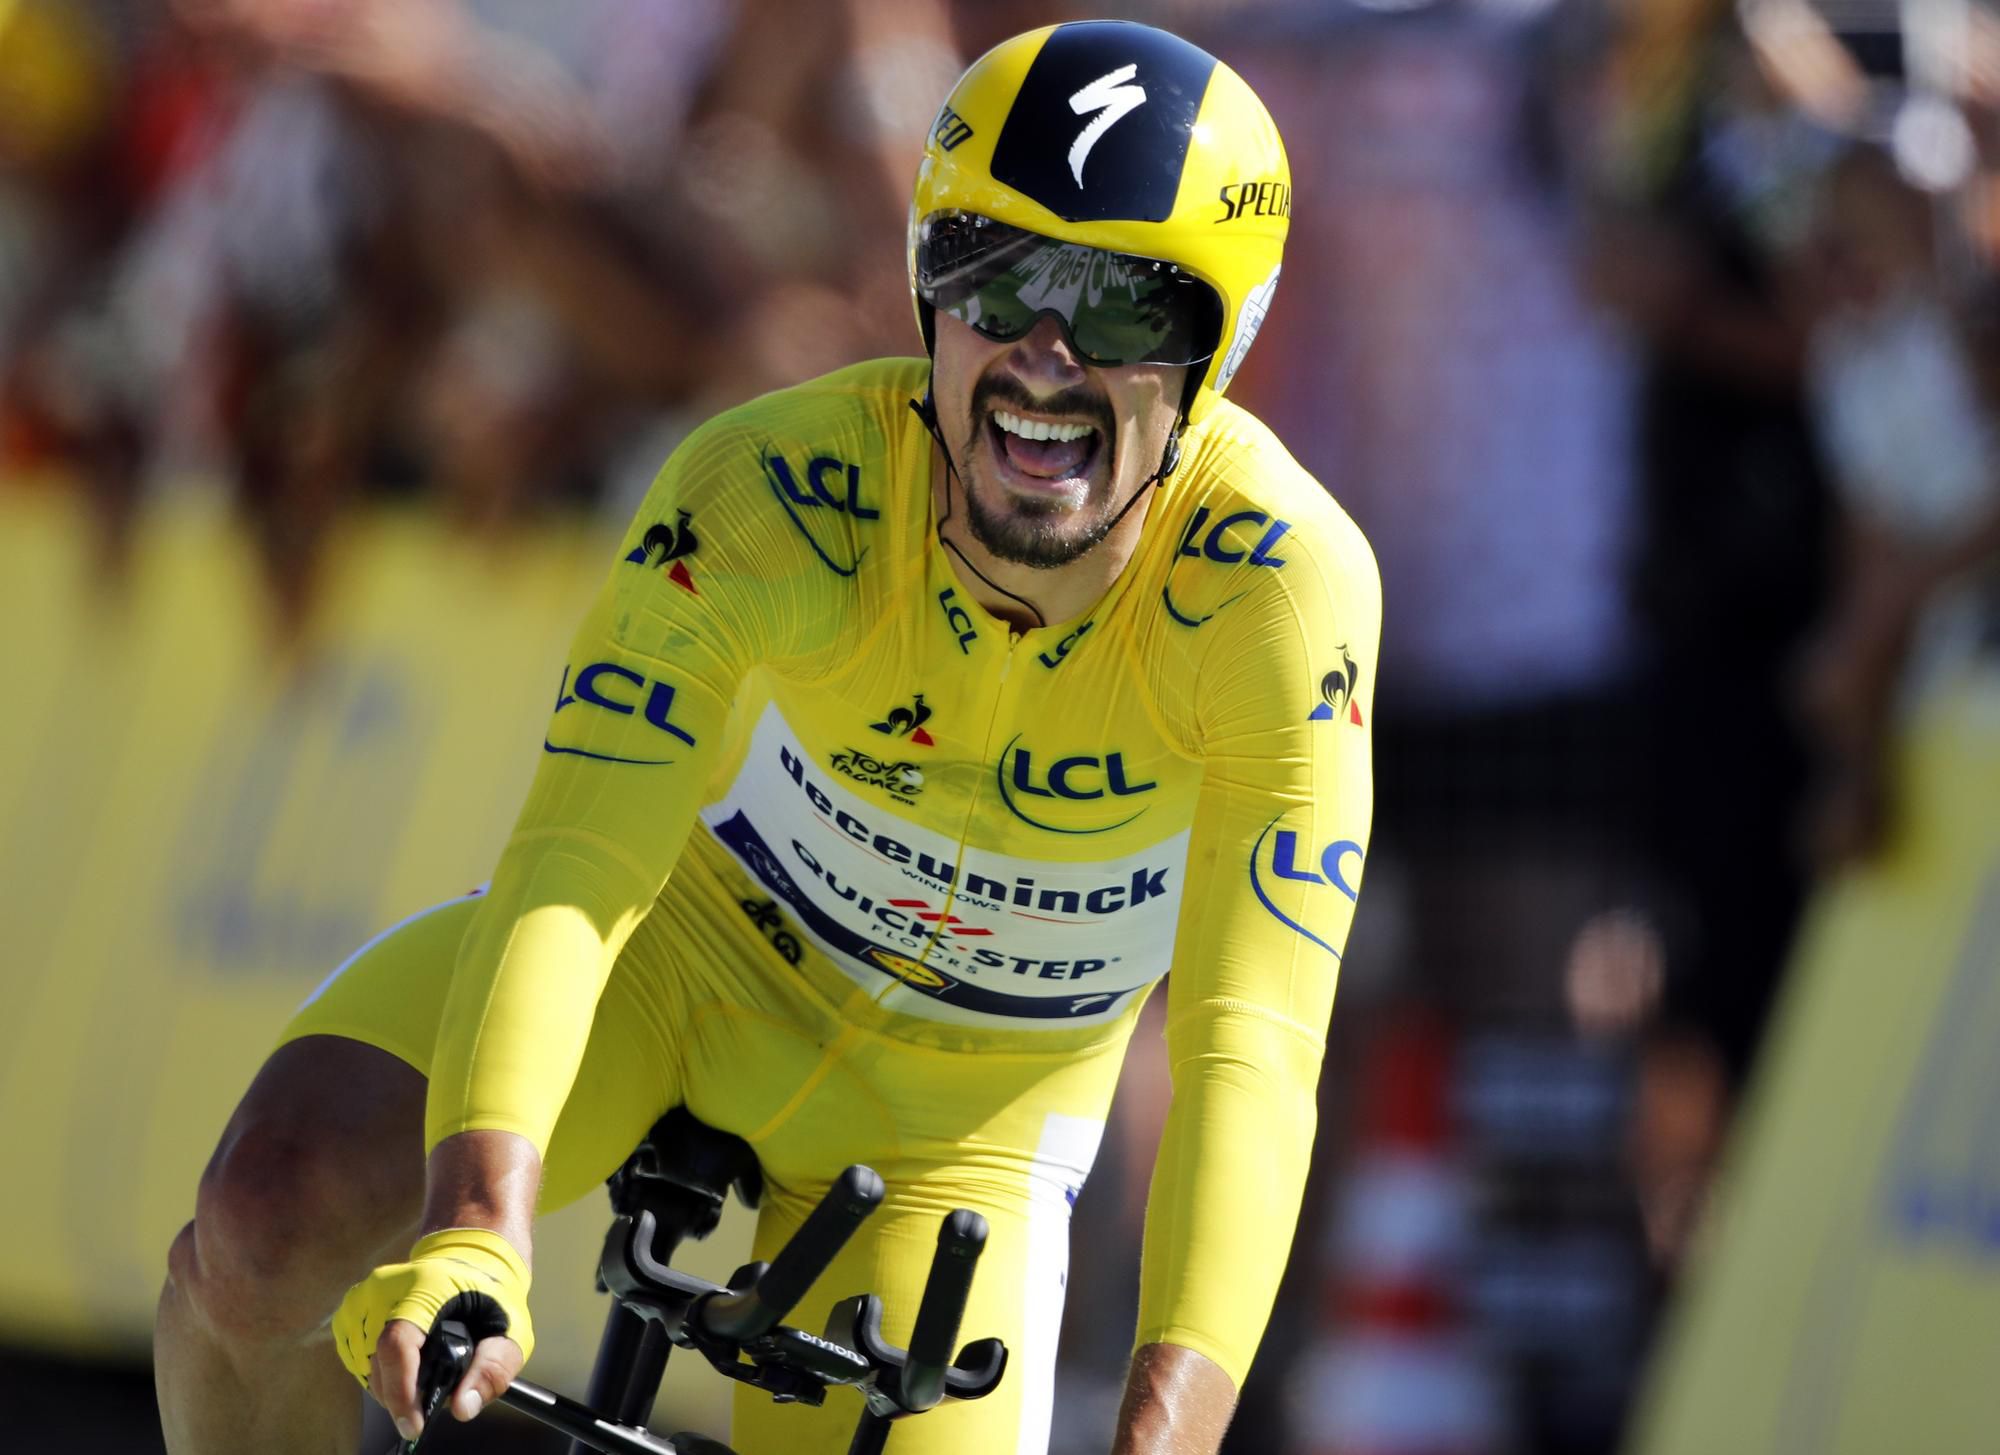 Francúzsky cyklista Julian Alaphillippe  (Deceuninck Quick Step) v žltom drese vedúceho pretekára.